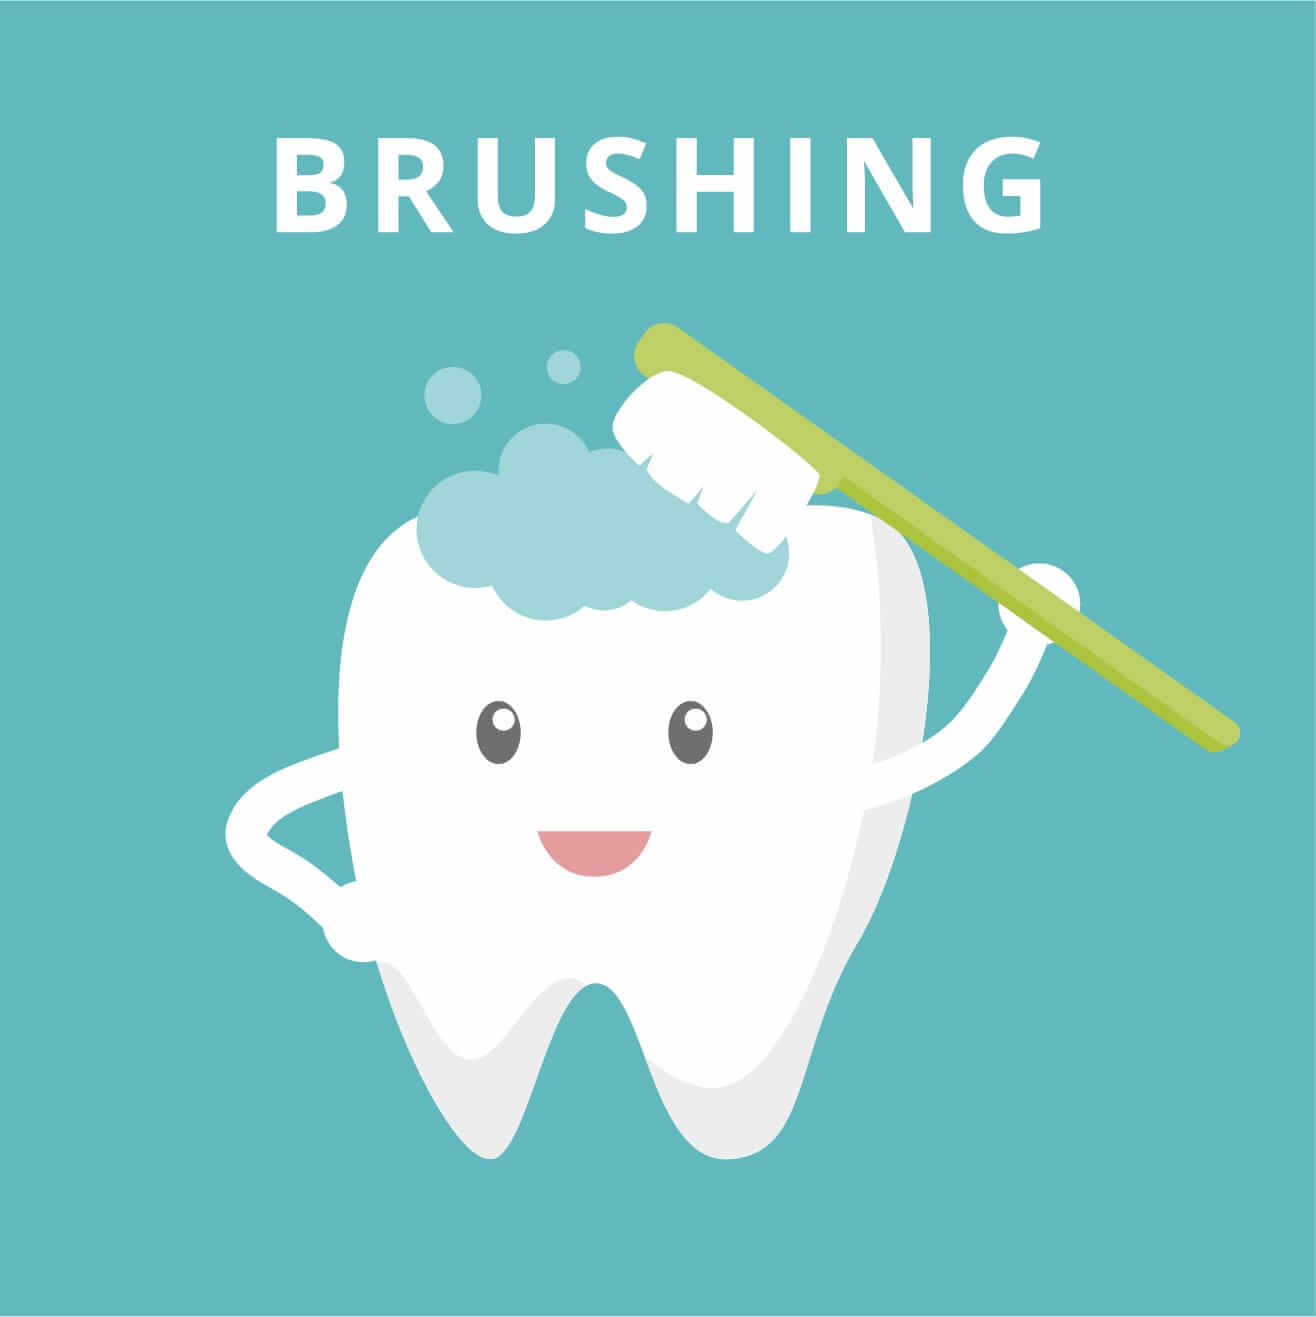 Зубы нужно чистить до завтрака или после. Правильно чистить зубы до завтрака или после завтрака. Когда лучше чистить зубы до или после завтрака. Зубы надо чистить до завтрака или после завтрака. Утром нужно чистить зубы до еды или после.